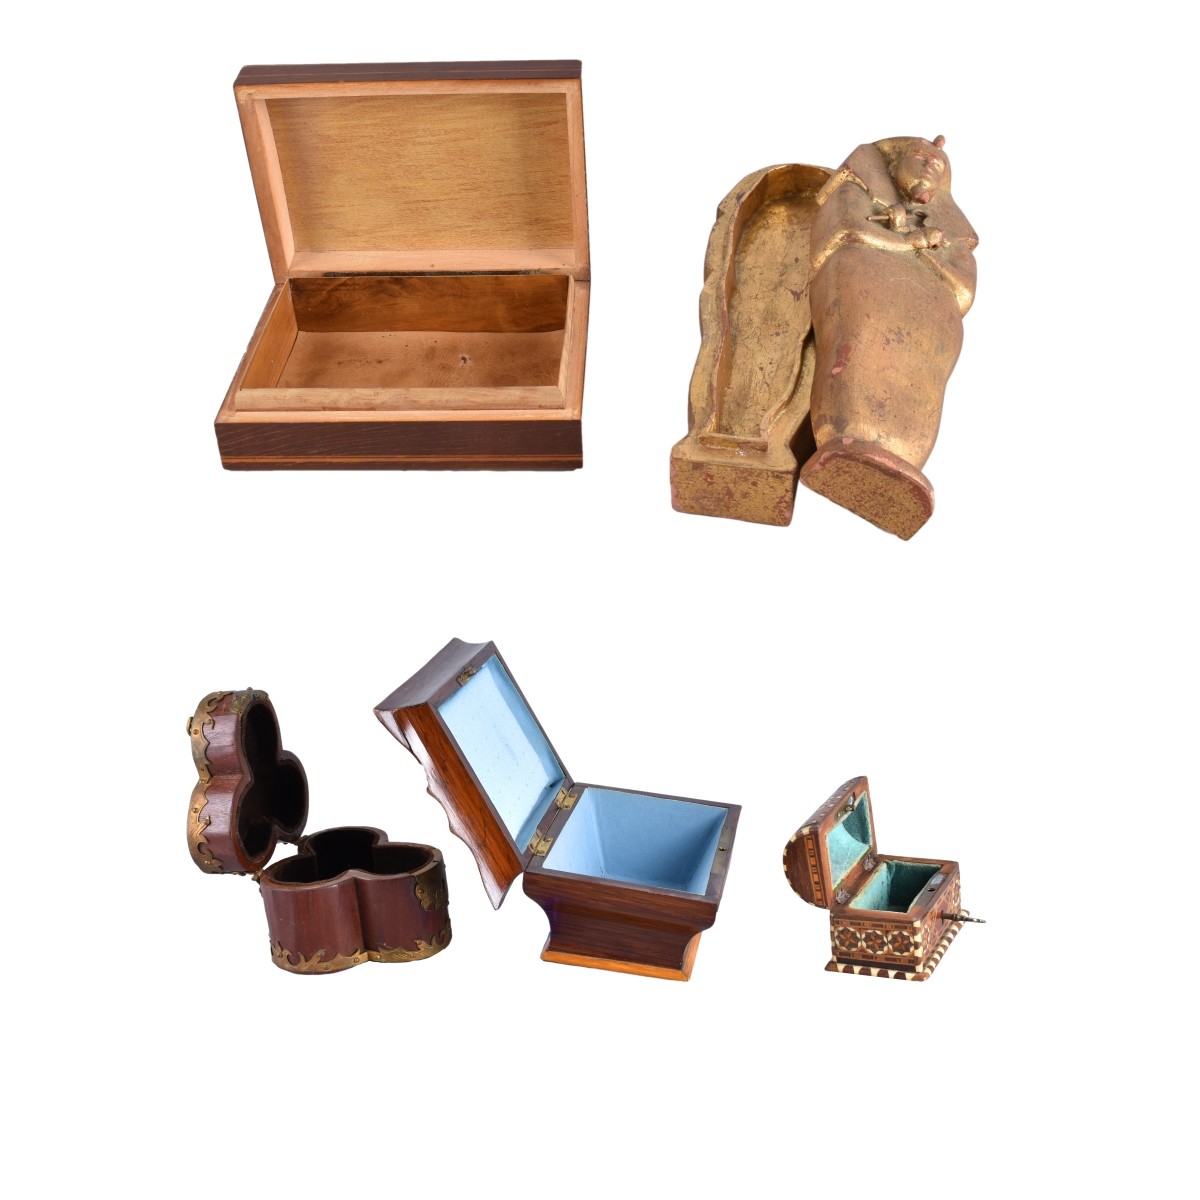 Five Vintage Wooden Boxes